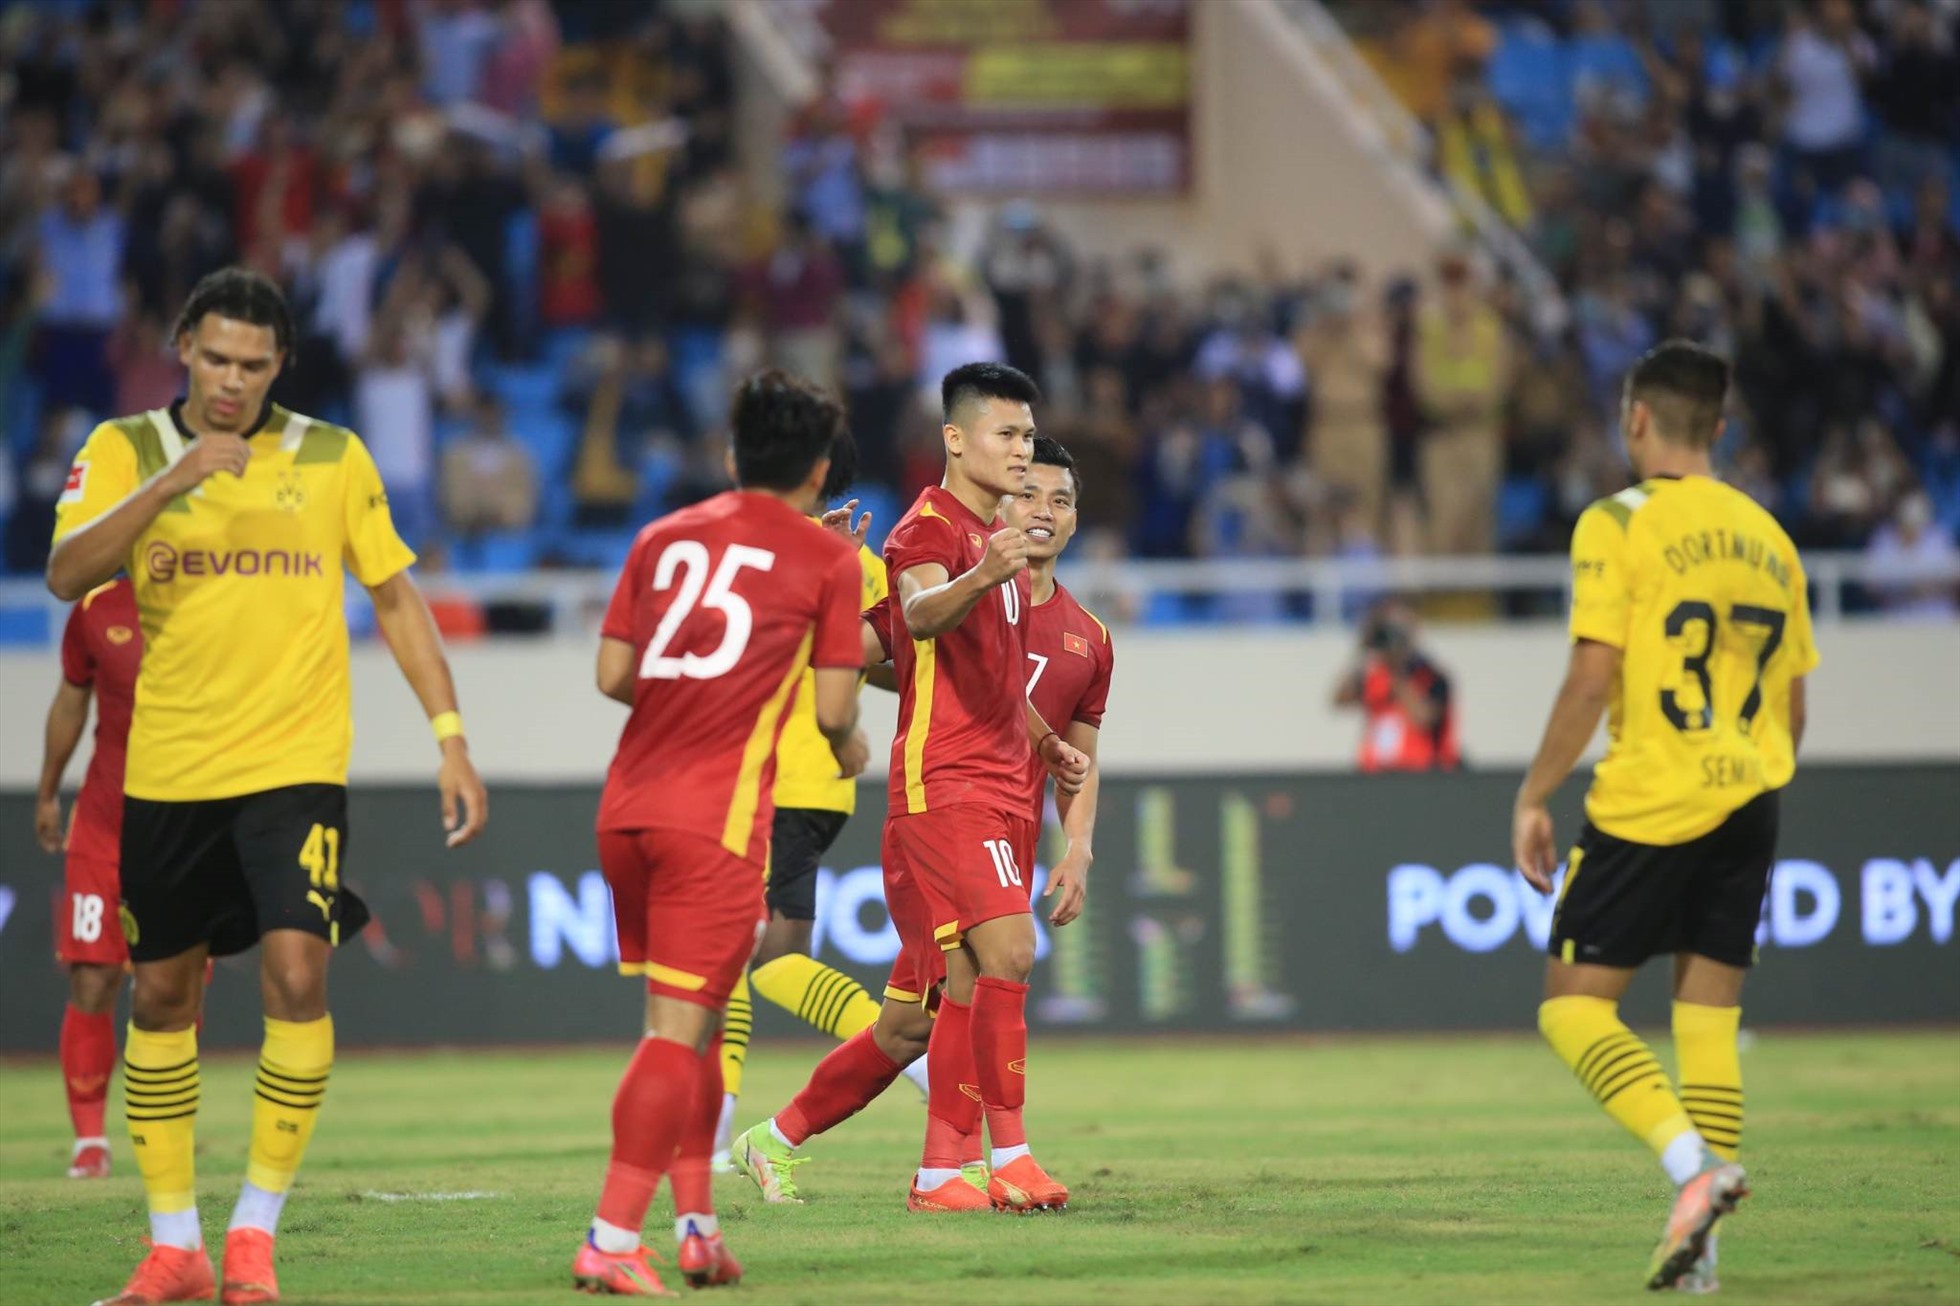 Sau khi sự cố được khắc phục, Tuấn Hải thực hiện thành công quả phạt đền. Đây cũng là tình huống khép lại trận đấu giữa đội tuyển Việt Nam là câu lạc bộ Dortmund.